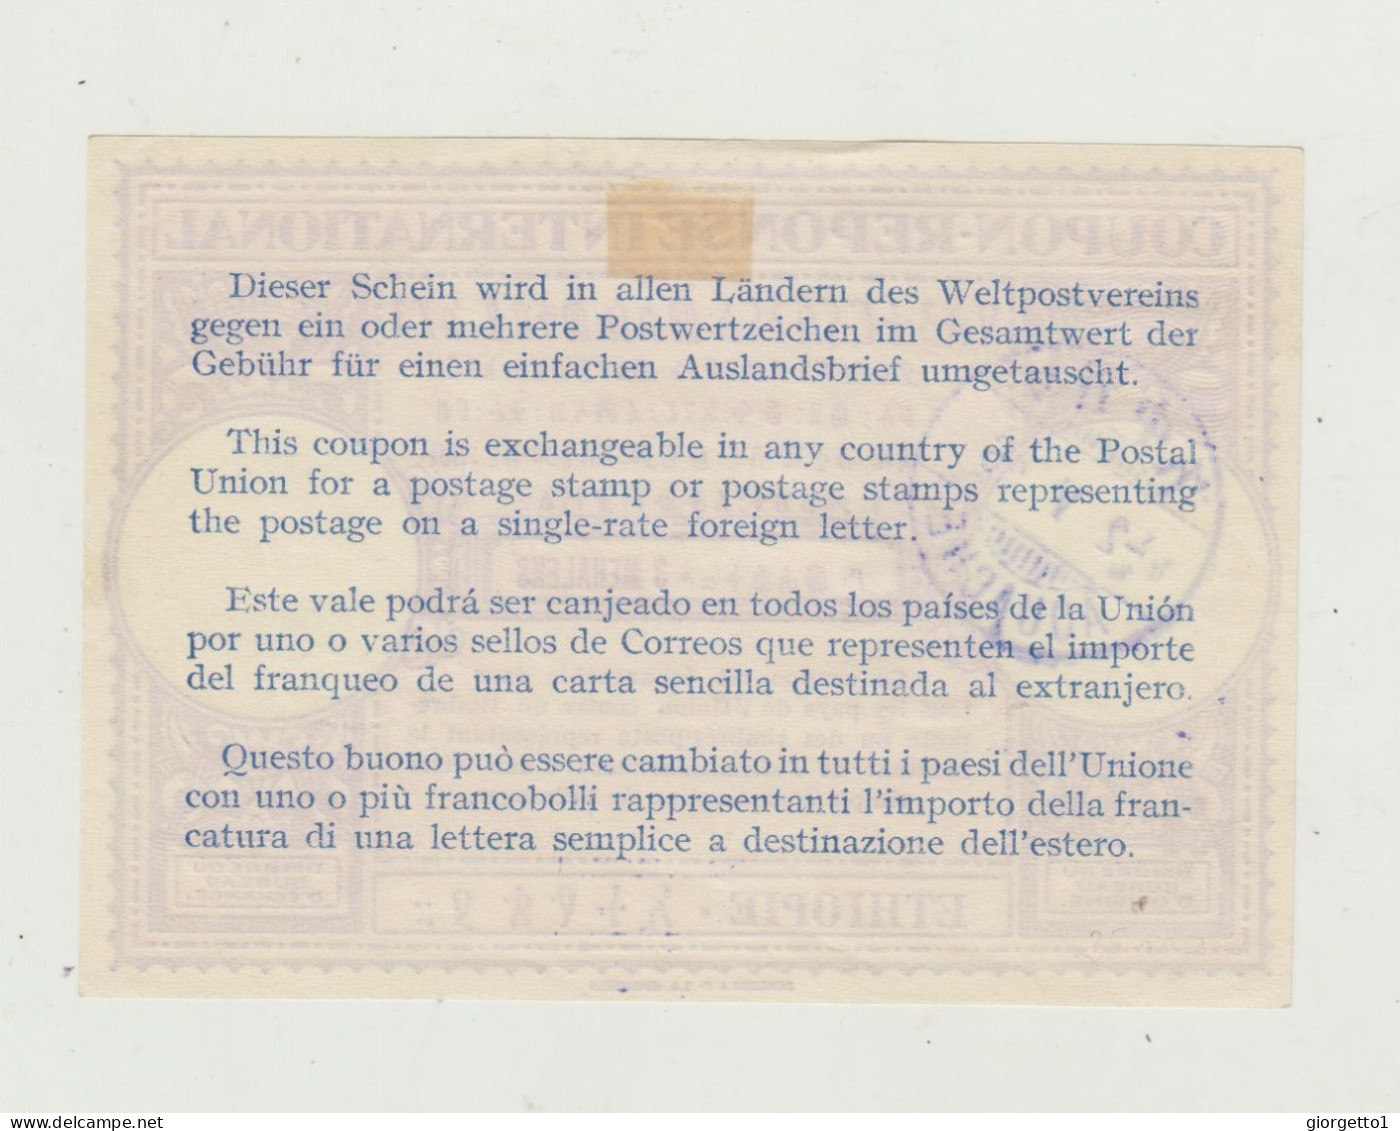 TAGLIANDO - RICEVUTA - COUPON  POSTALE PER FRANCOBOLLI SPEDIZIONE INTERNAZIONALE - ETIOPIA -DEL 1936 - AFRICA ORIENTALE - Marcophilia